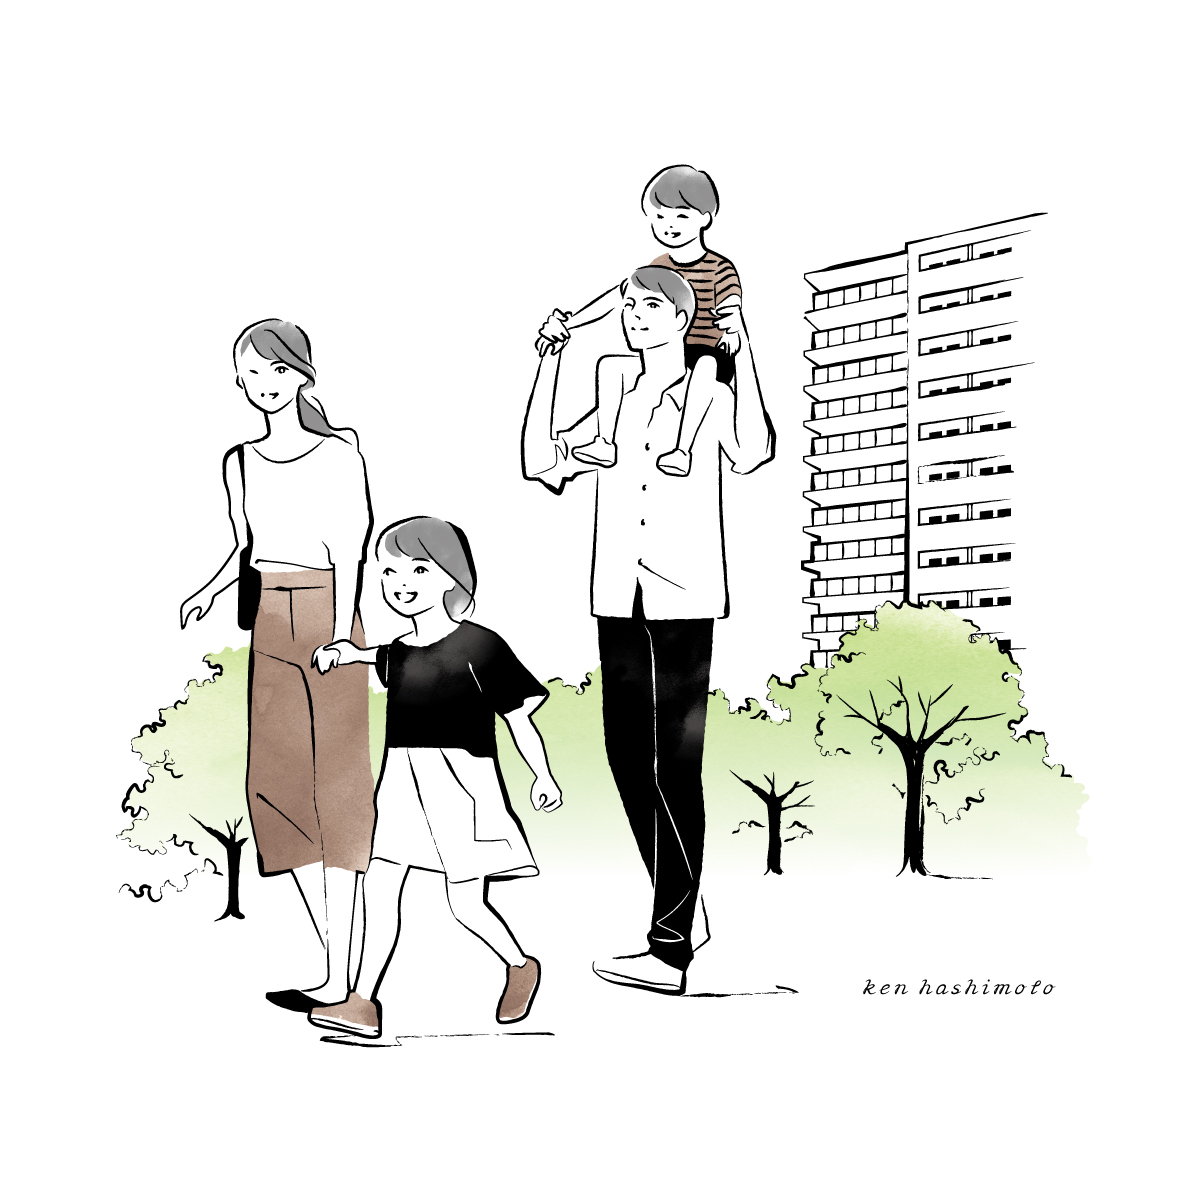 イラスト紹介 散歩する4人家族のイラスト 橋本 健 Ken Hashimoto